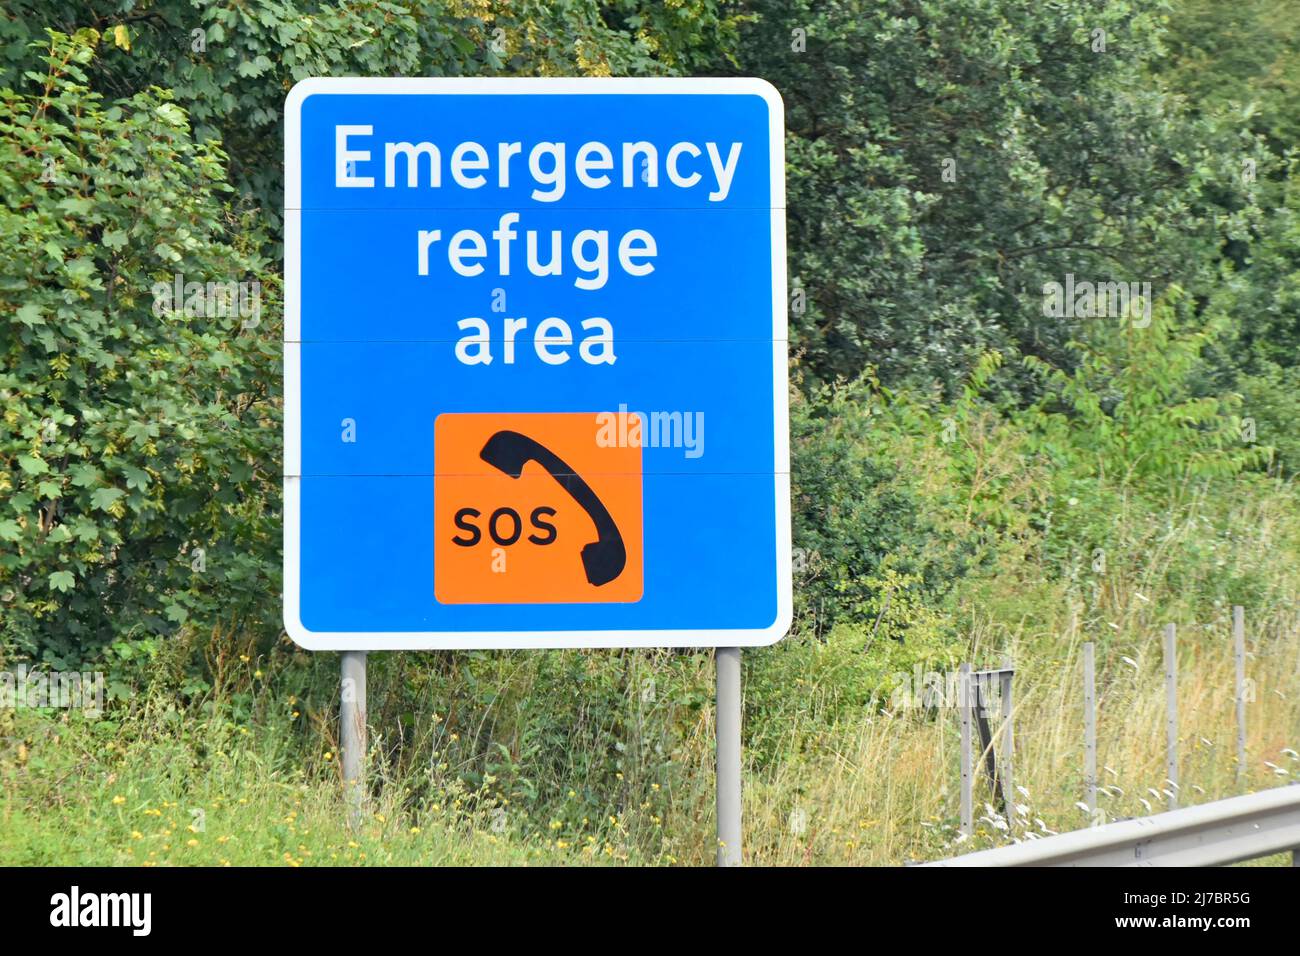 Gros plan du panneau bleu à côté de la controversée no hard baudle SMART M25 autoroute à 800 mètres avant SOS téléphone refuge d'urgence zone layby England UK Banque D'Images